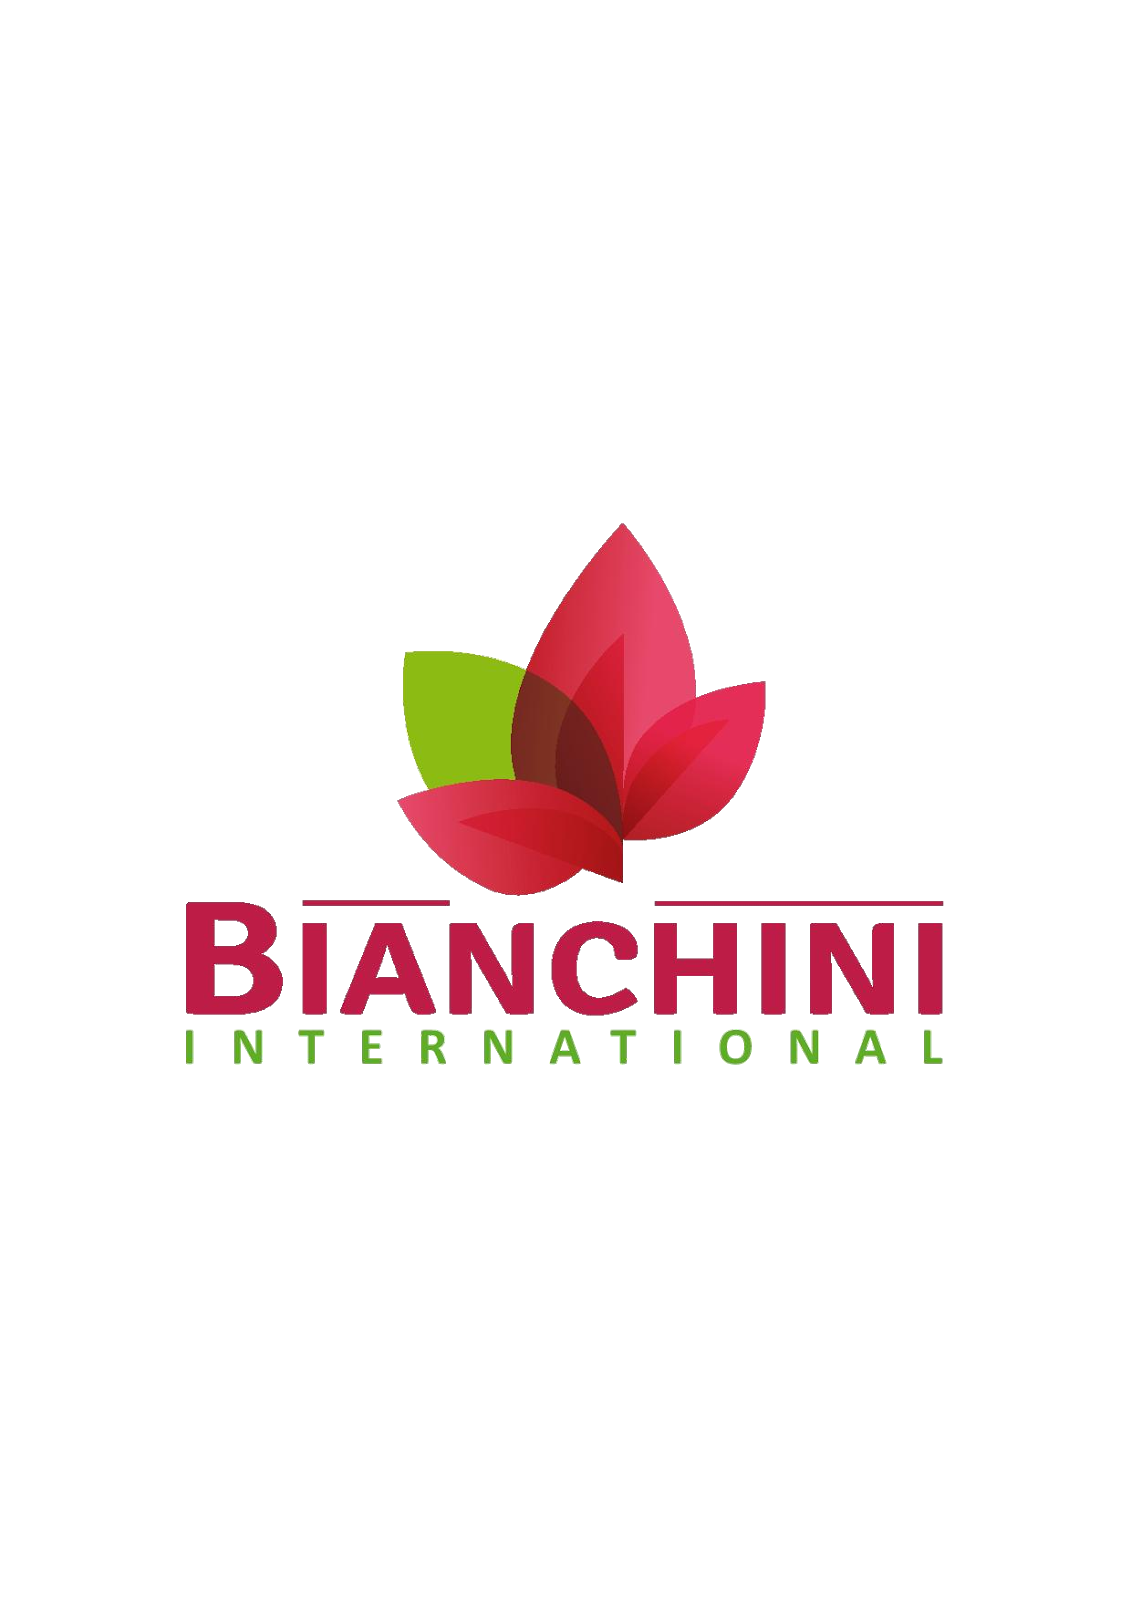 Bianchini International